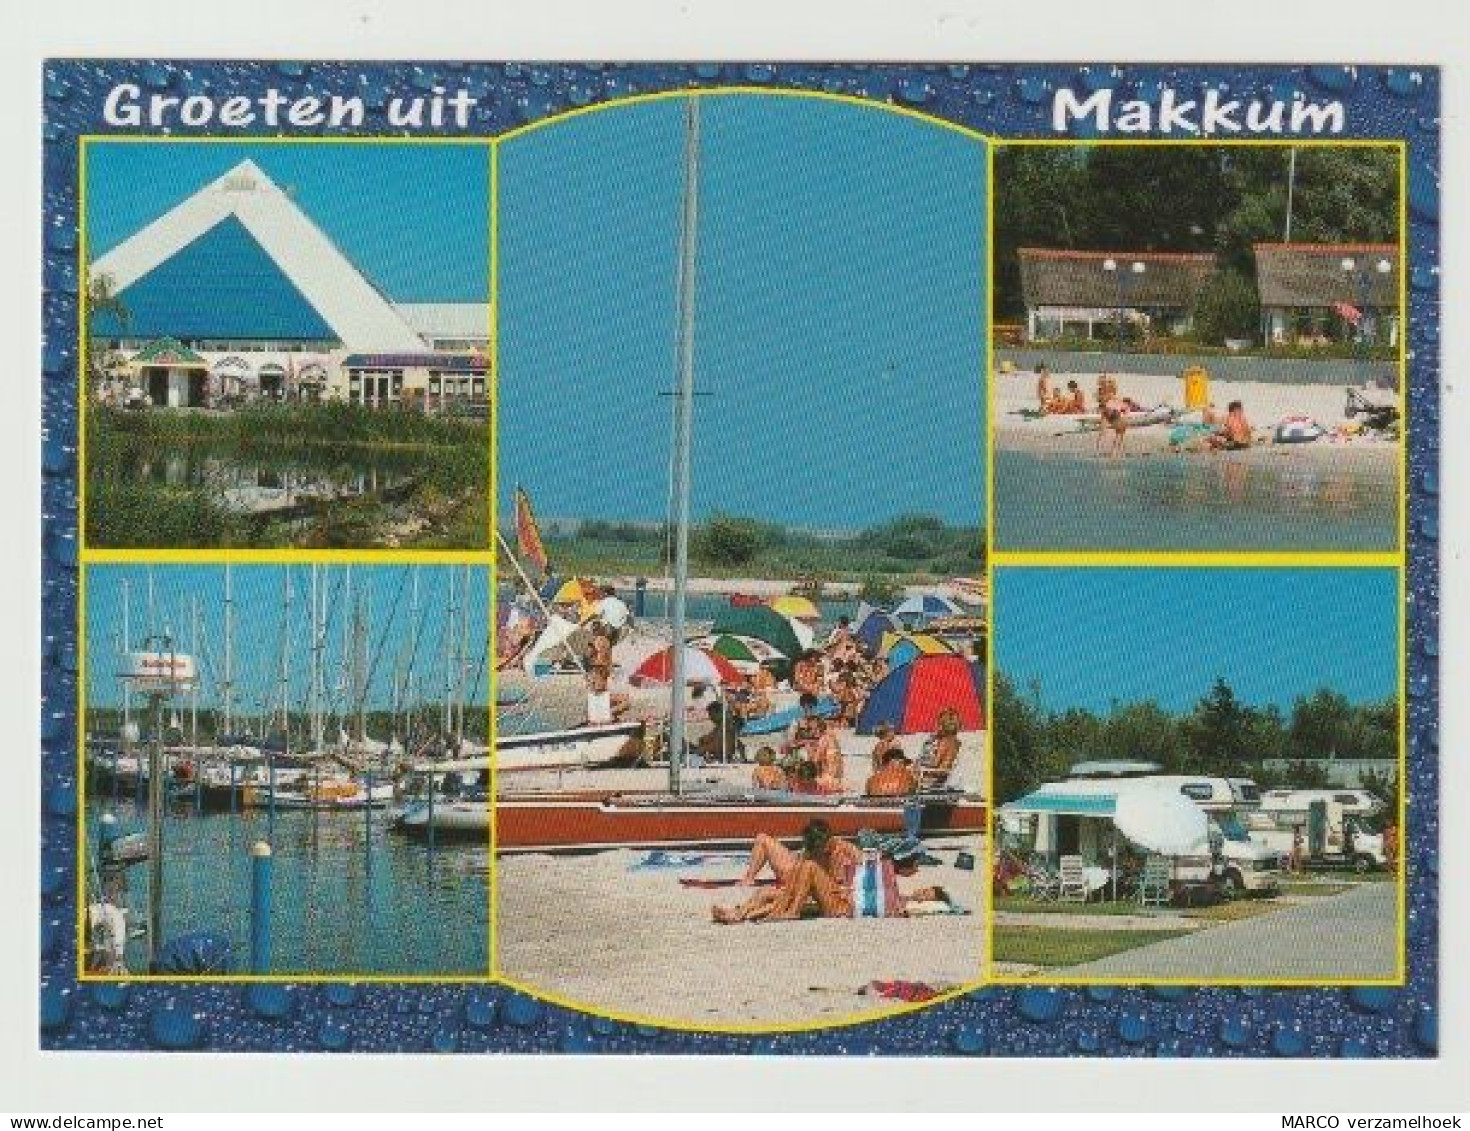 Ansichtkaart-postcard Makkum Friesland (NL) - Makkum